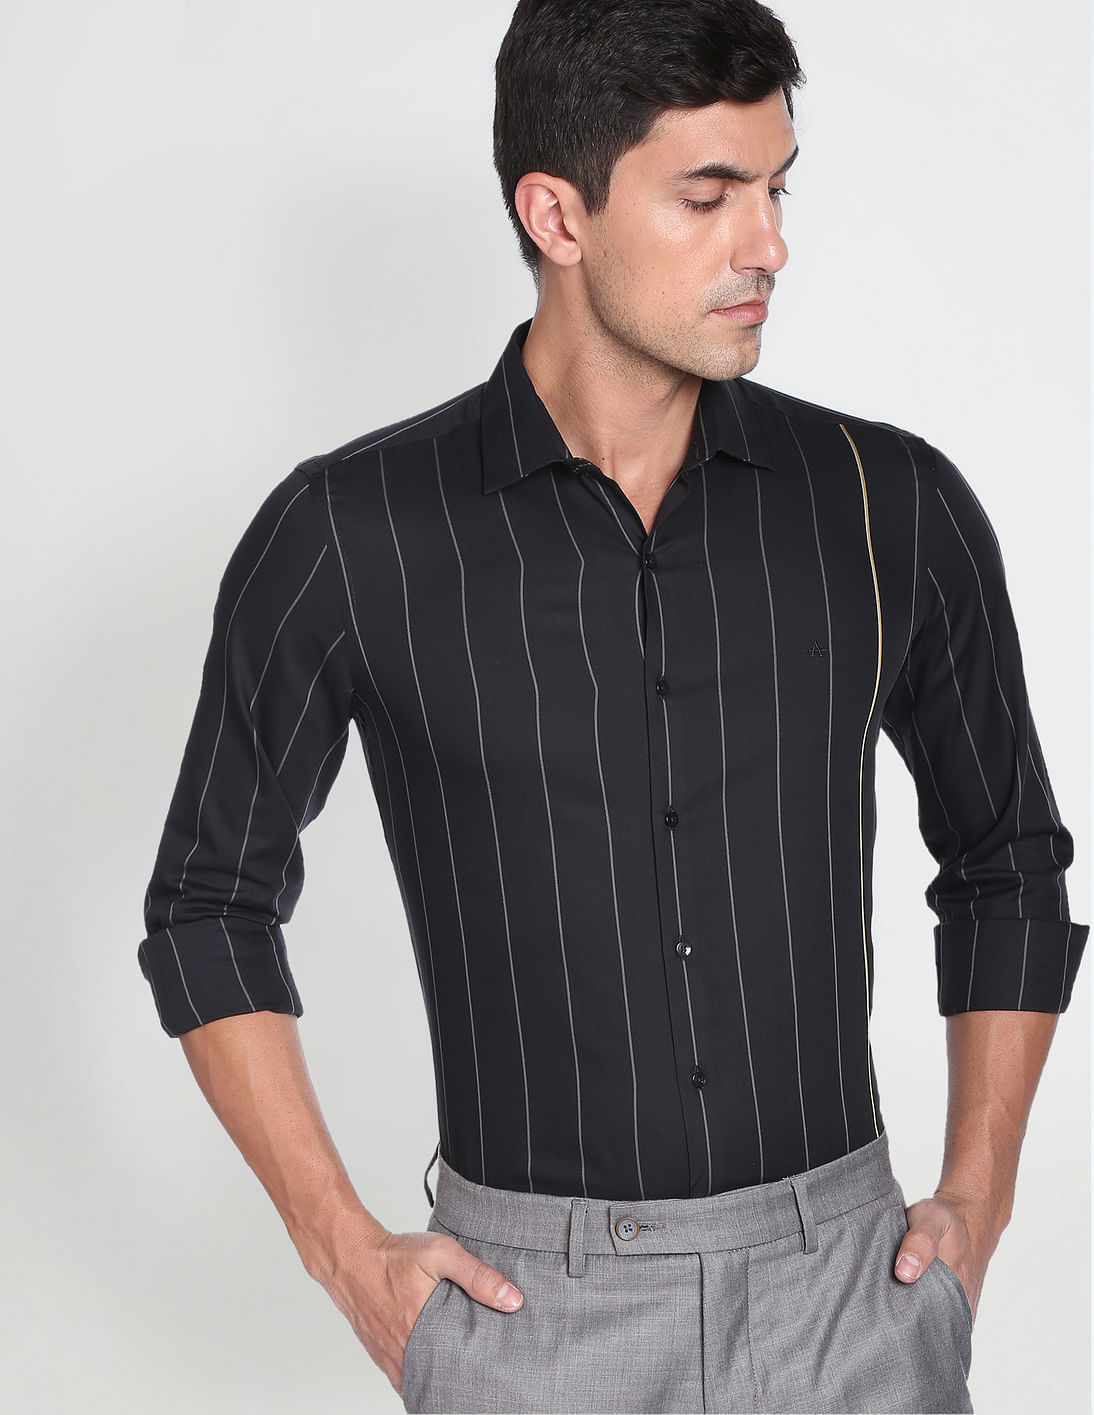 Buy Arrow Vertical Stripe Twill Shirt - NNNOW.com